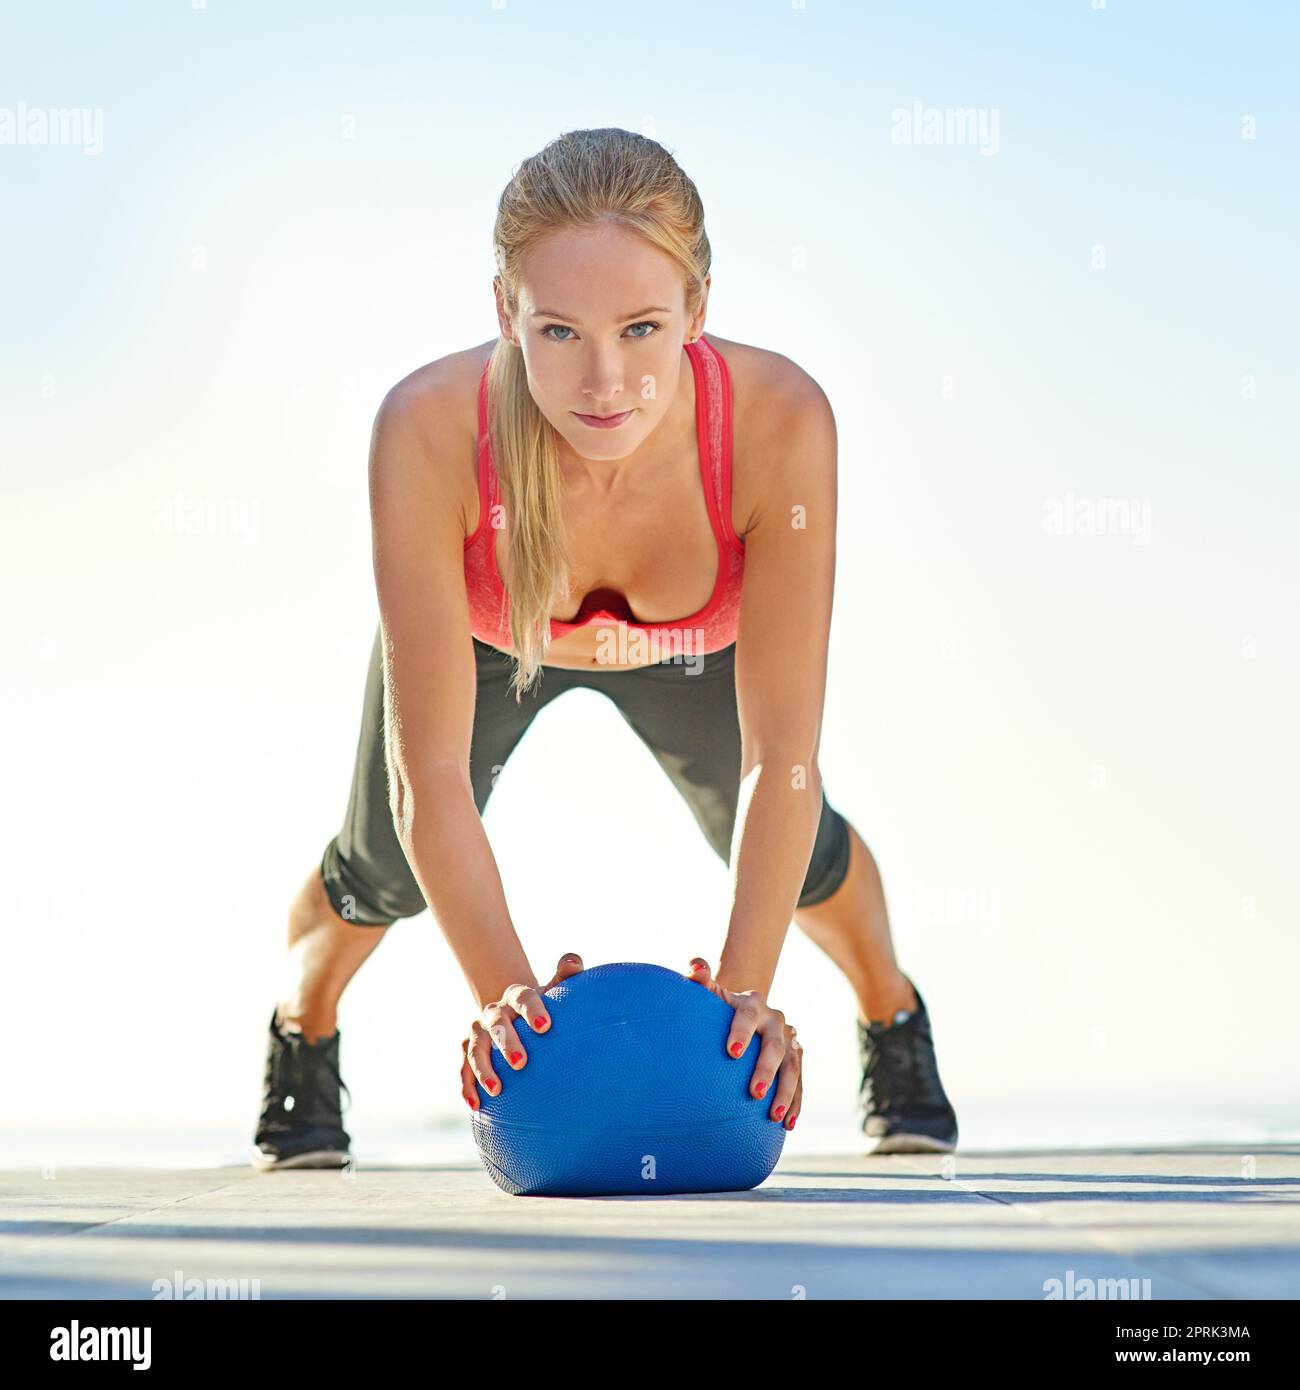 Prende sul serio il suo fitness. Ritratto completo di una giovane donna che fa pushup con una palla medica. Foto Stock